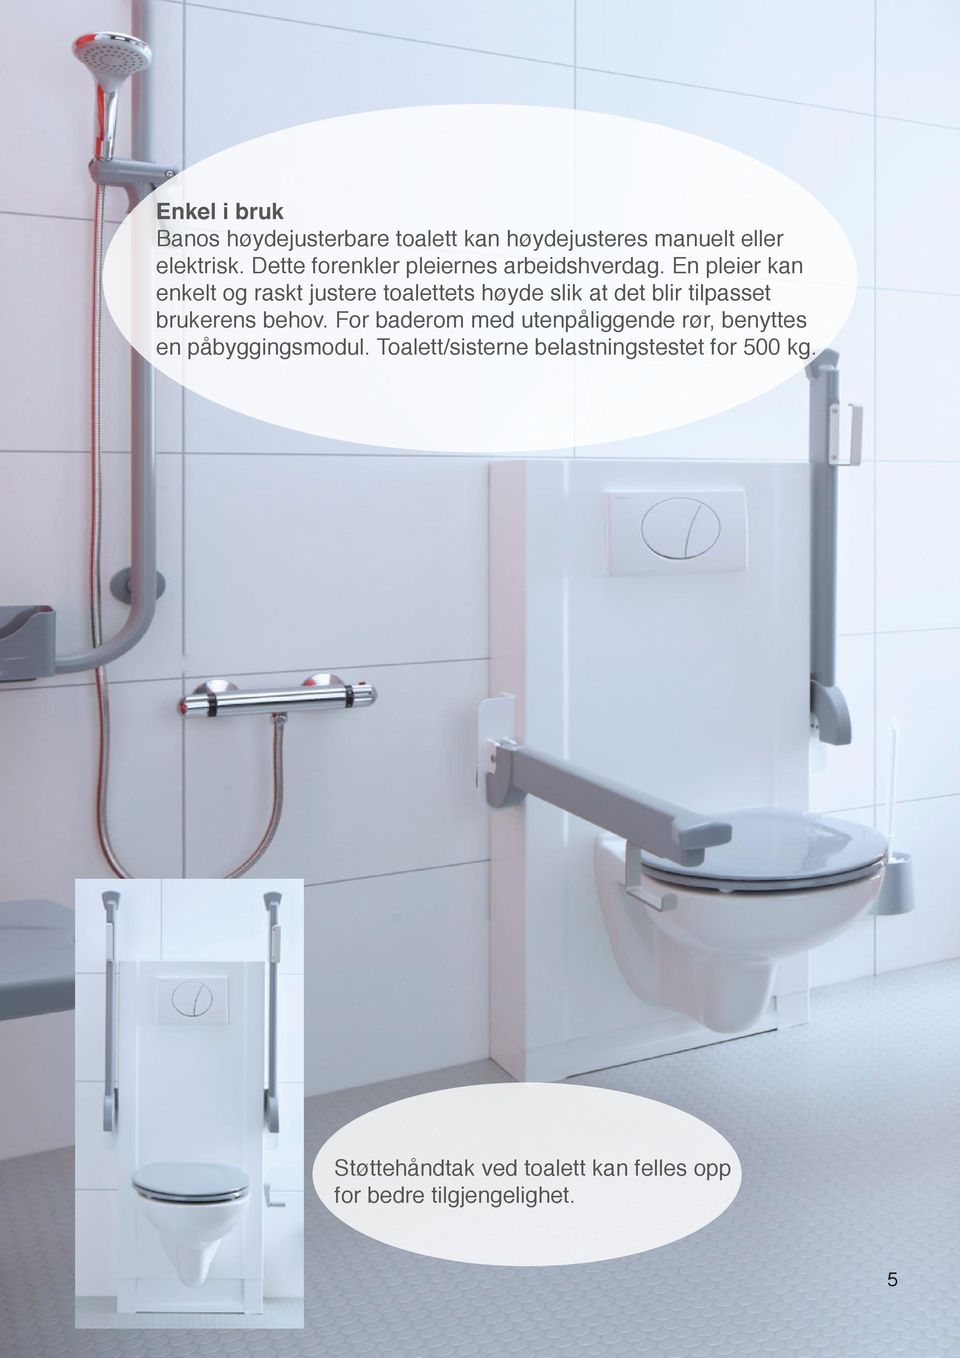 En pleier kan enkelt og raskt justere toalettets høyde slik at det blir tilpasset brukerens behov.